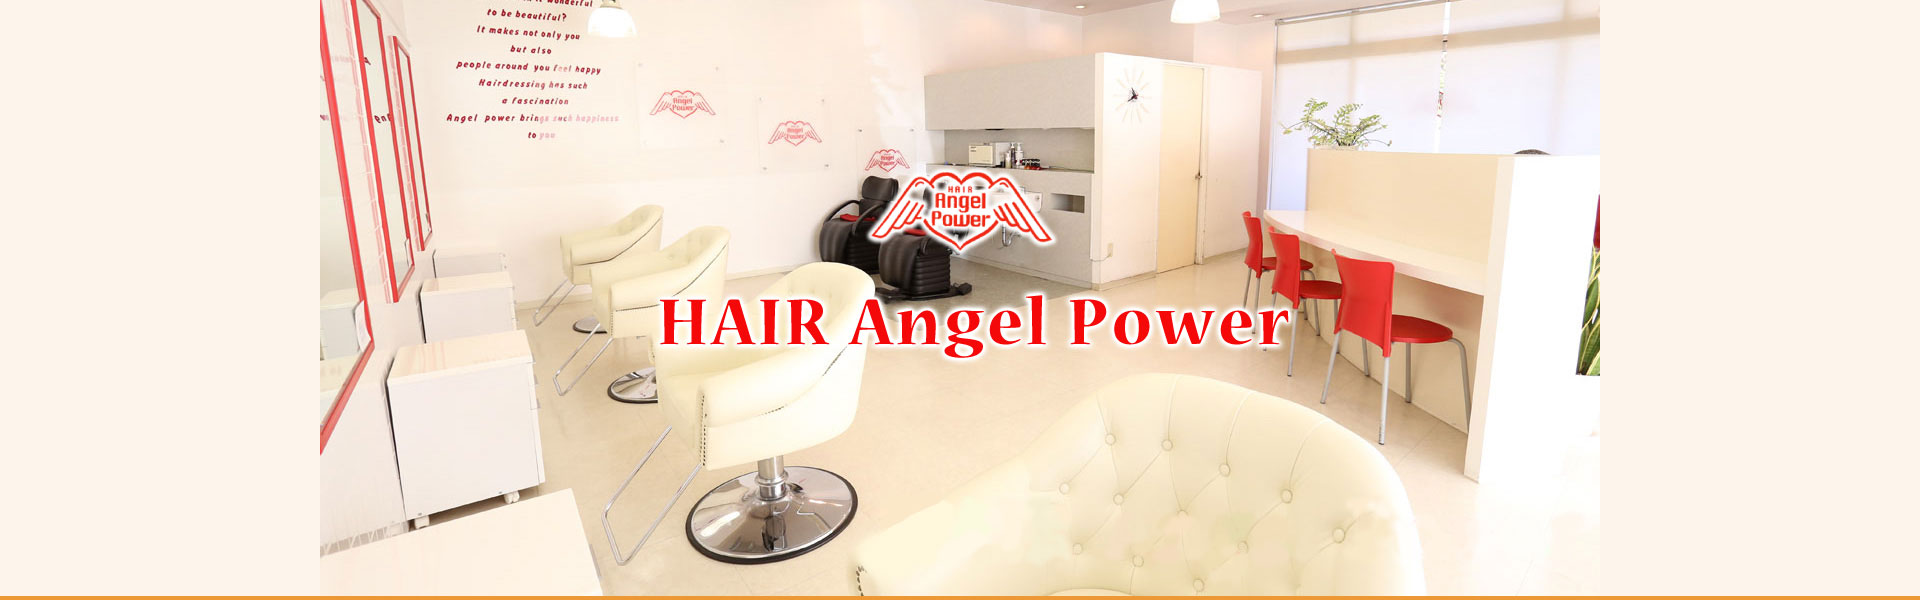 HAIR Angel Power